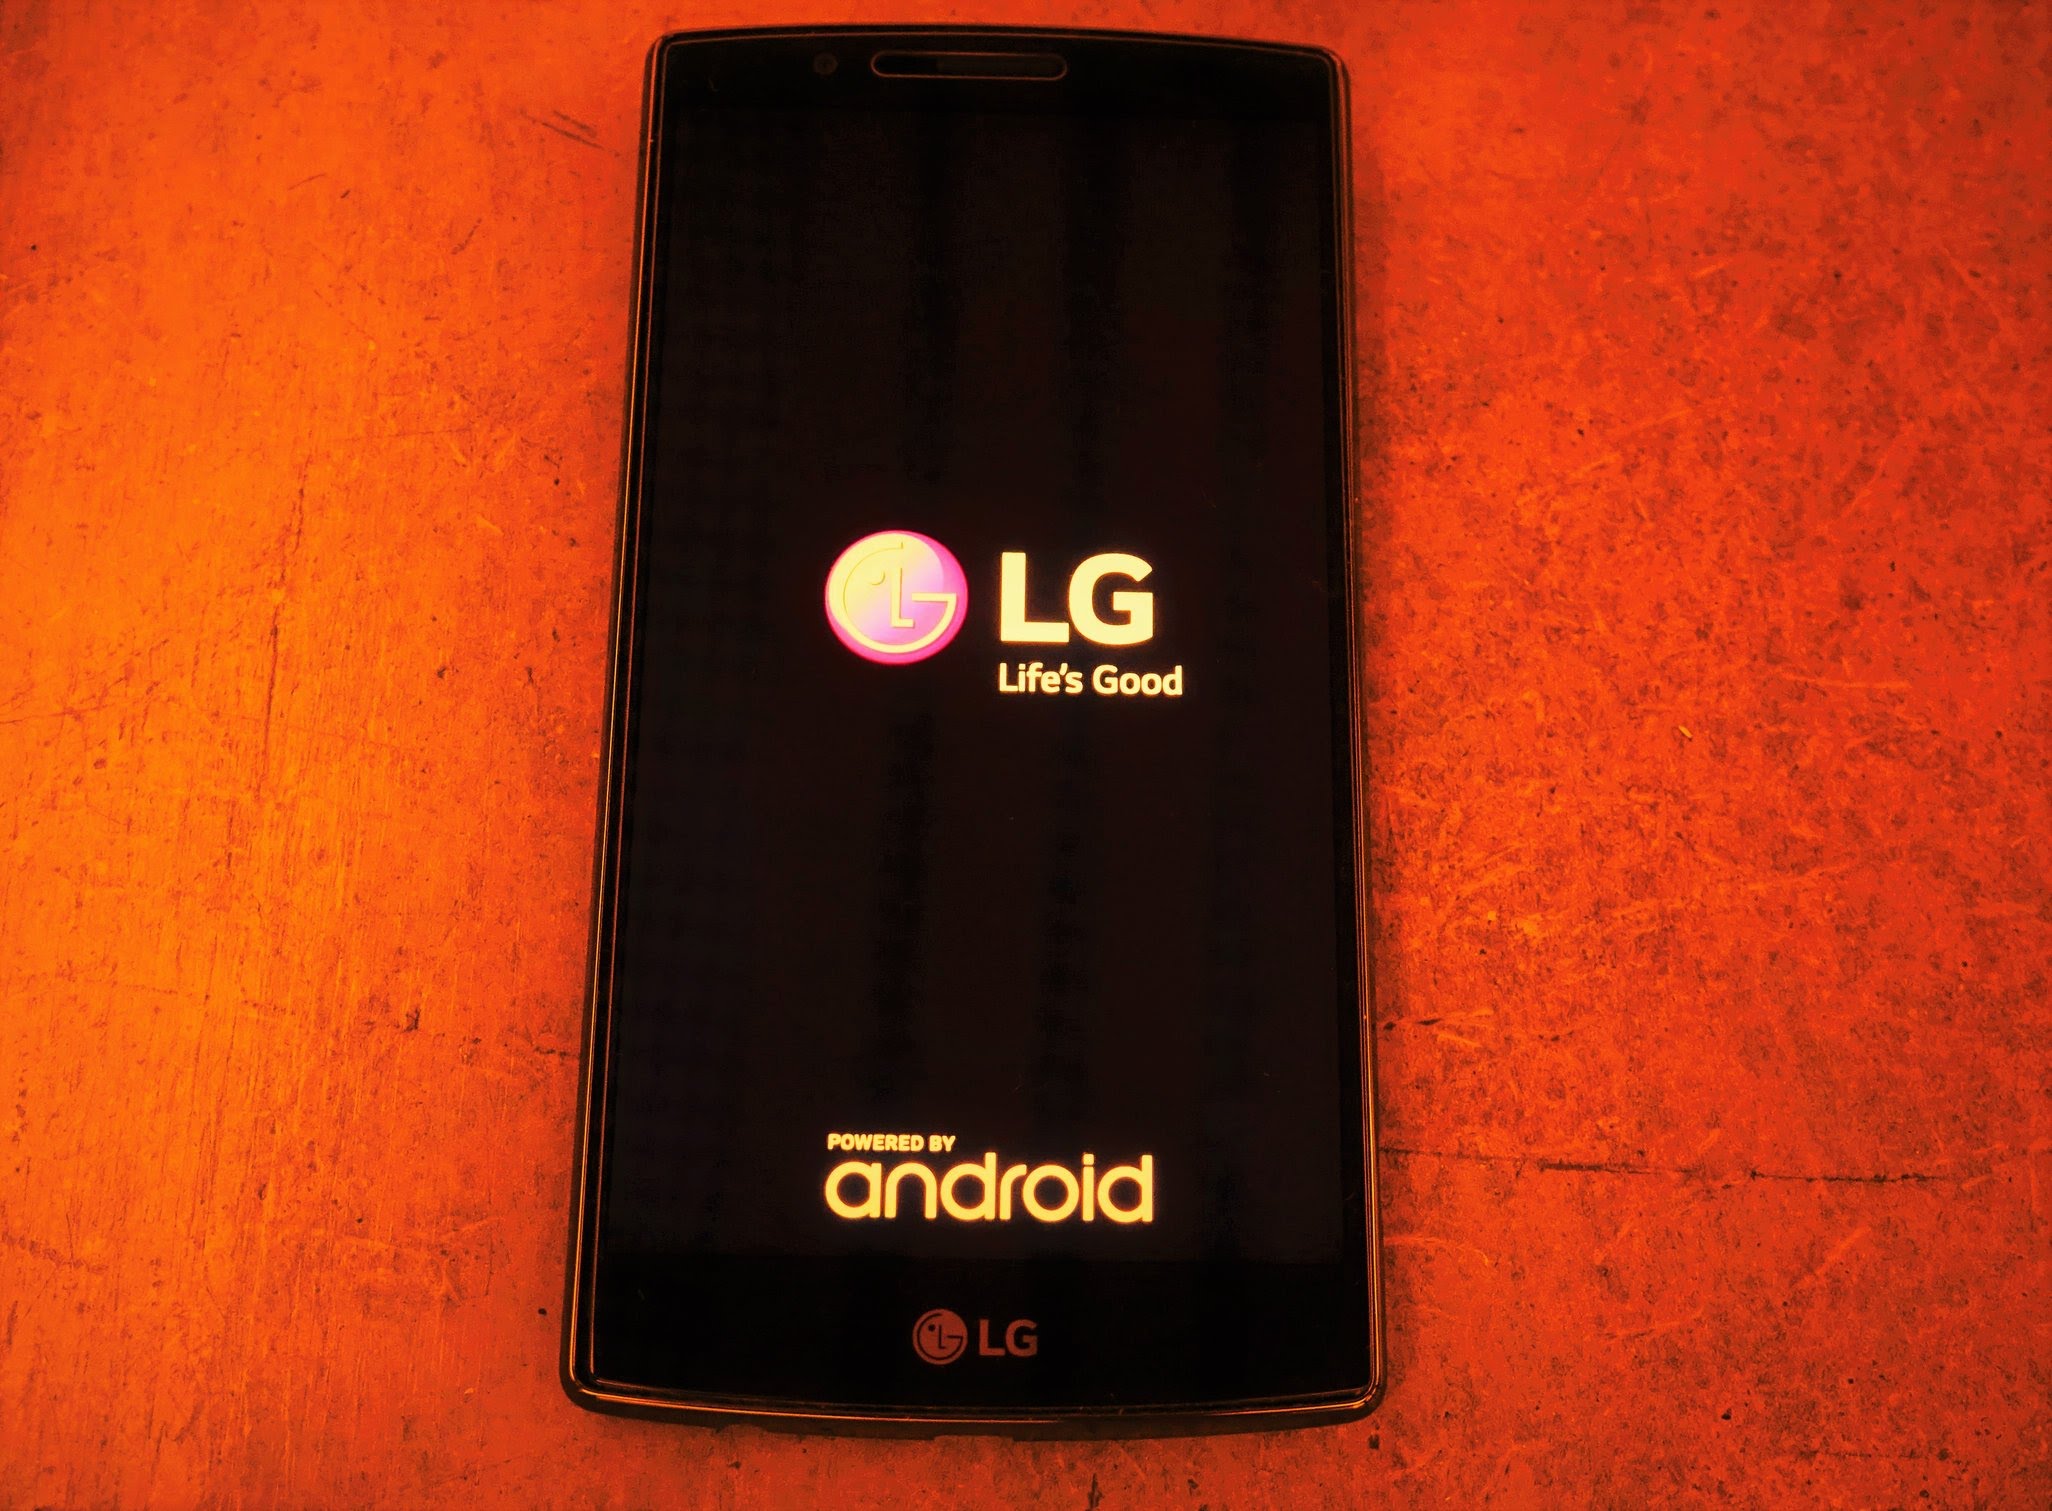  LG V10 bị đột tử y hệt như LG G4, cách khắc phục tạm thời